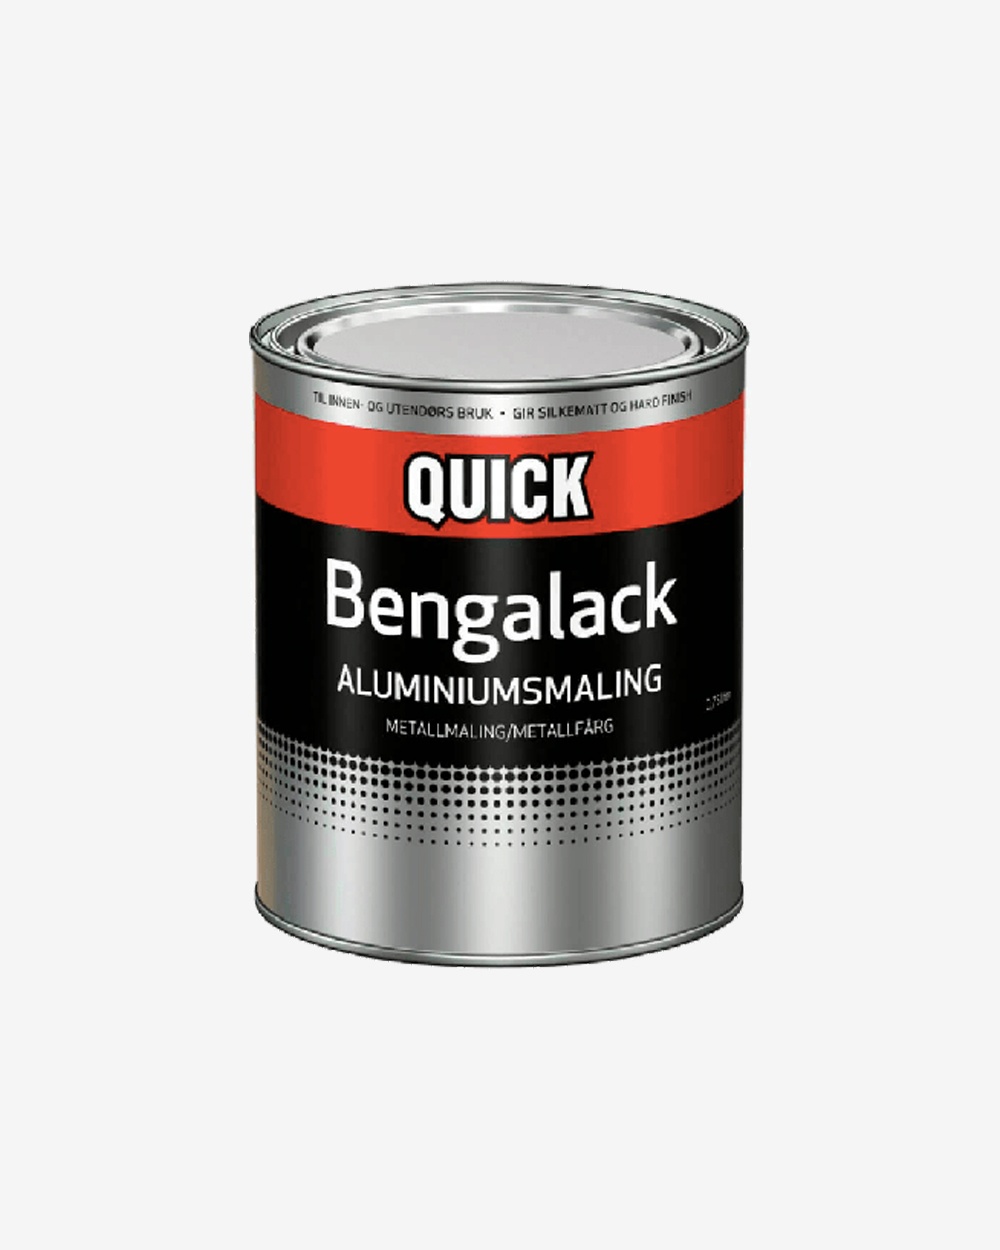 Billede af Quick Bengalack - Aluminiumsfarve hos Picment.dk